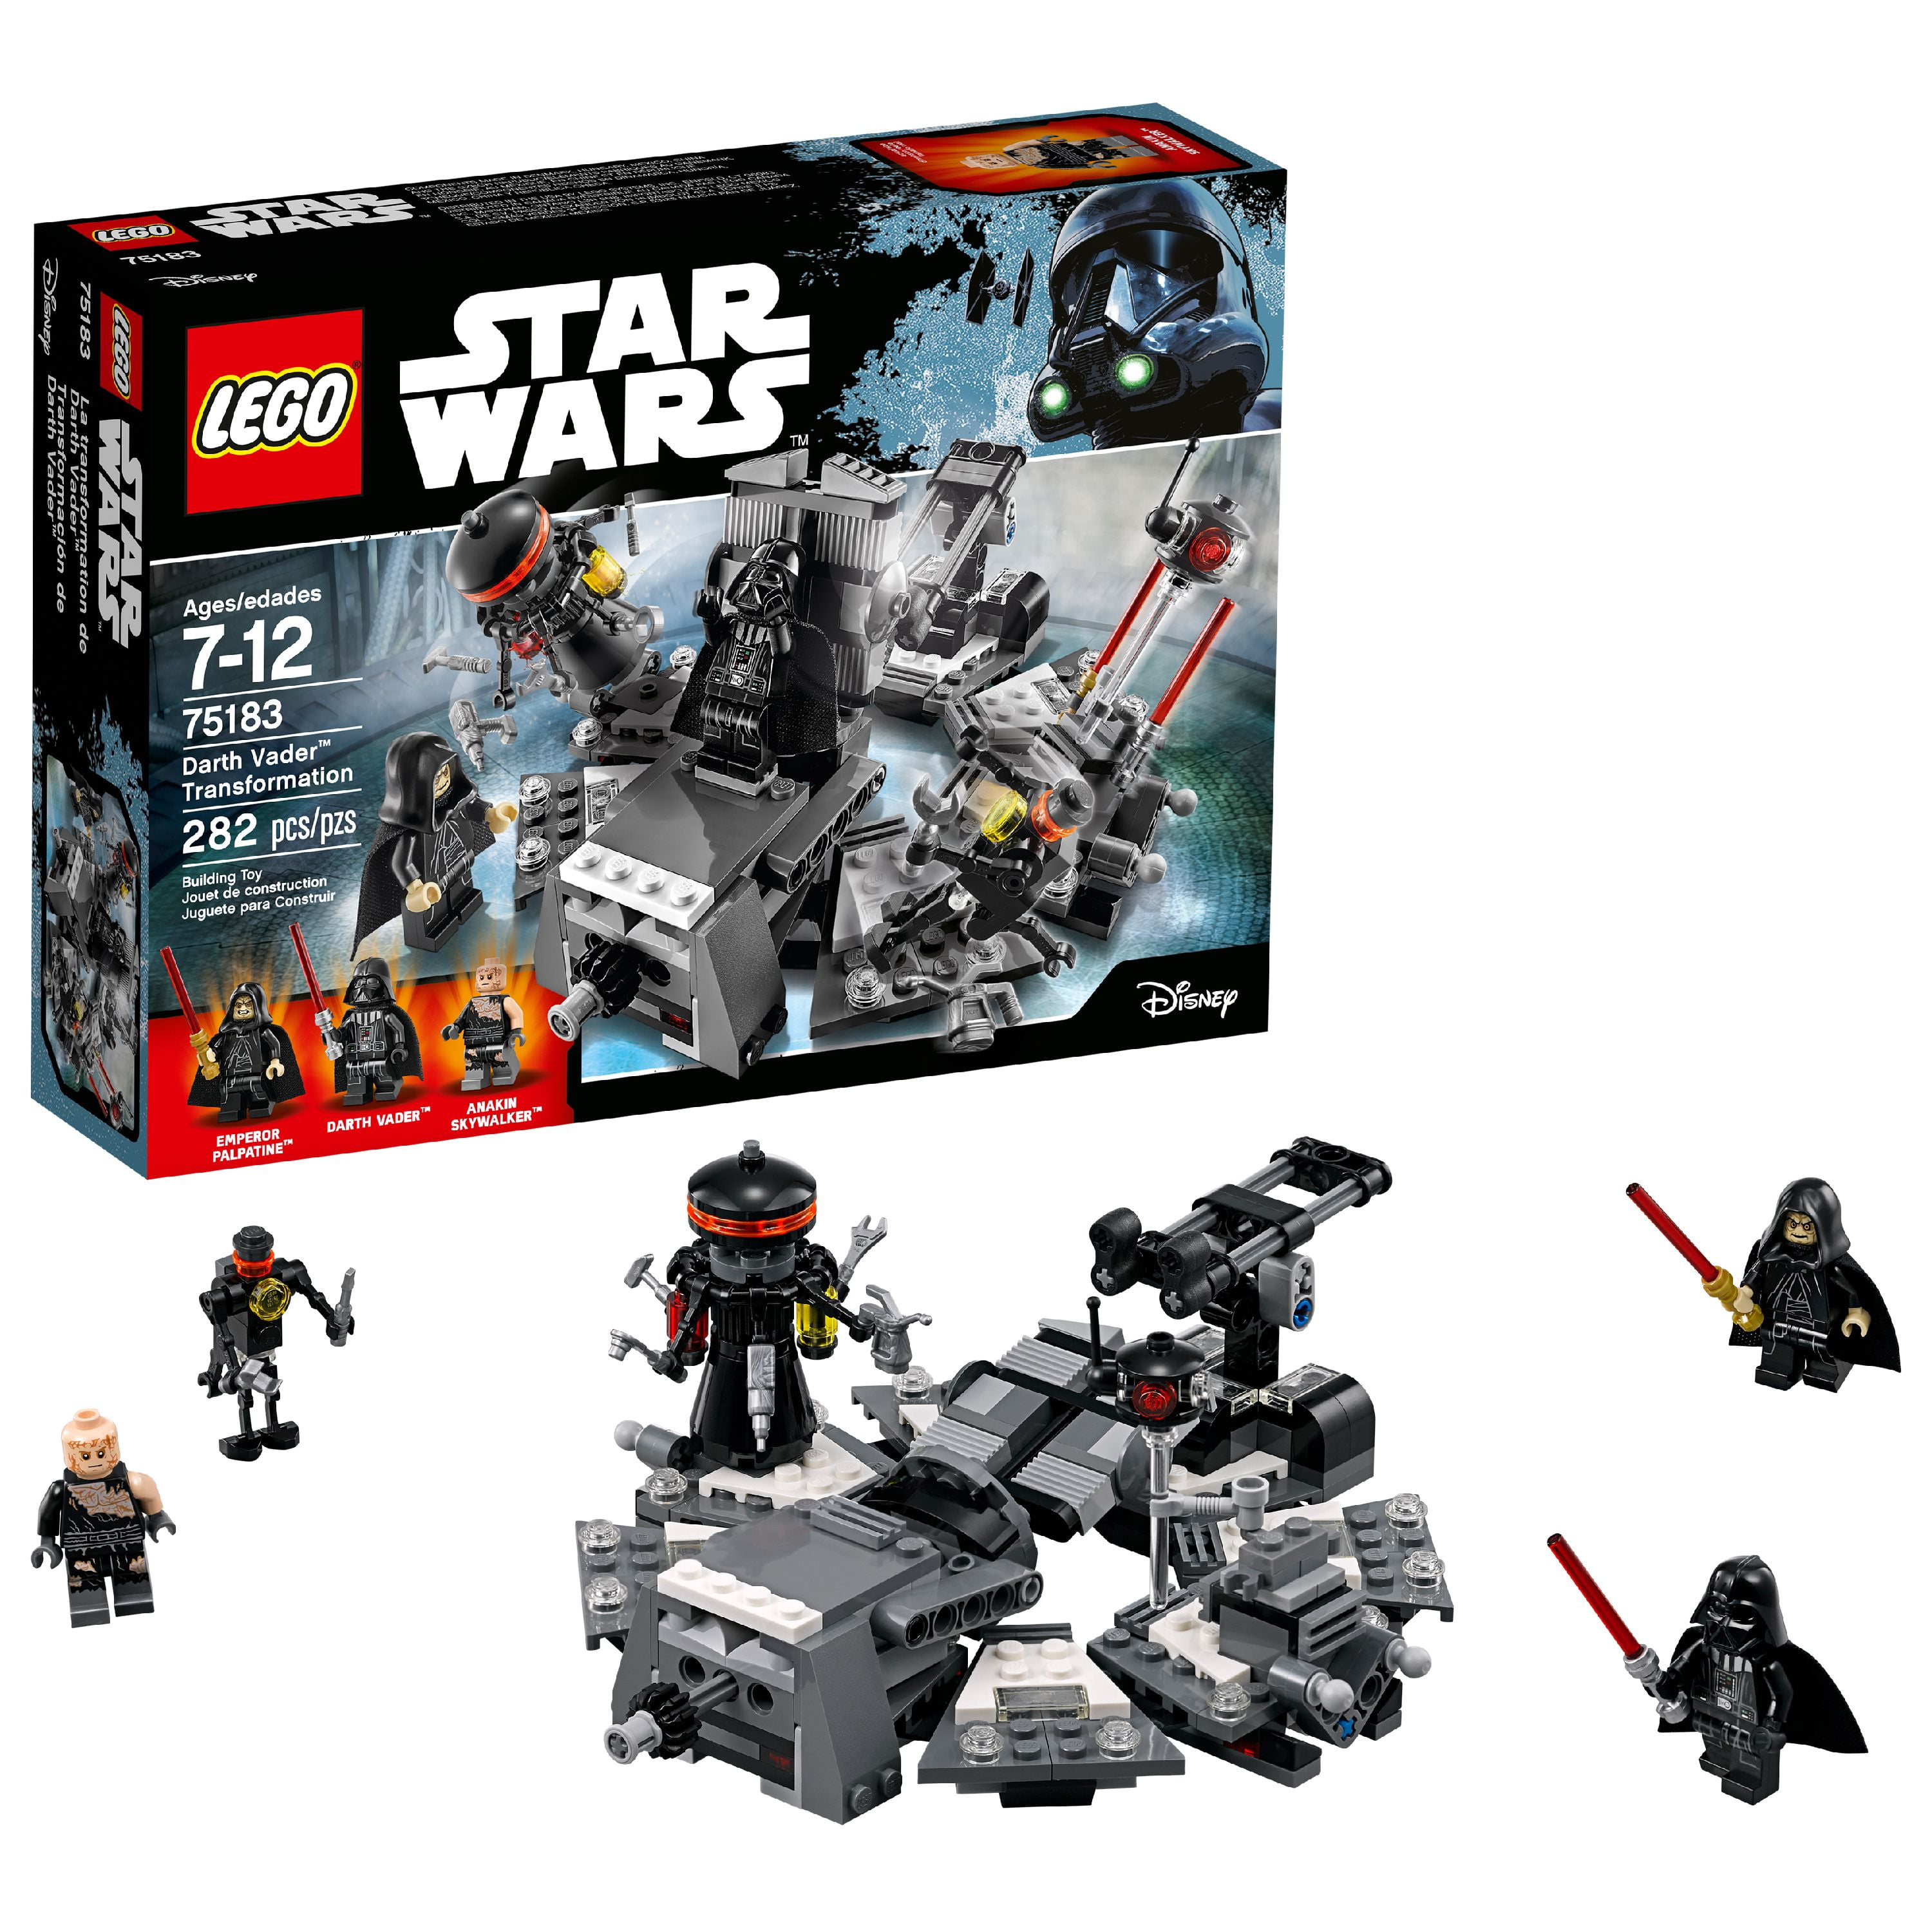 LEGO STAR WARS Notice 75183 NEUF NEW Darth Vader Transformation Instruction